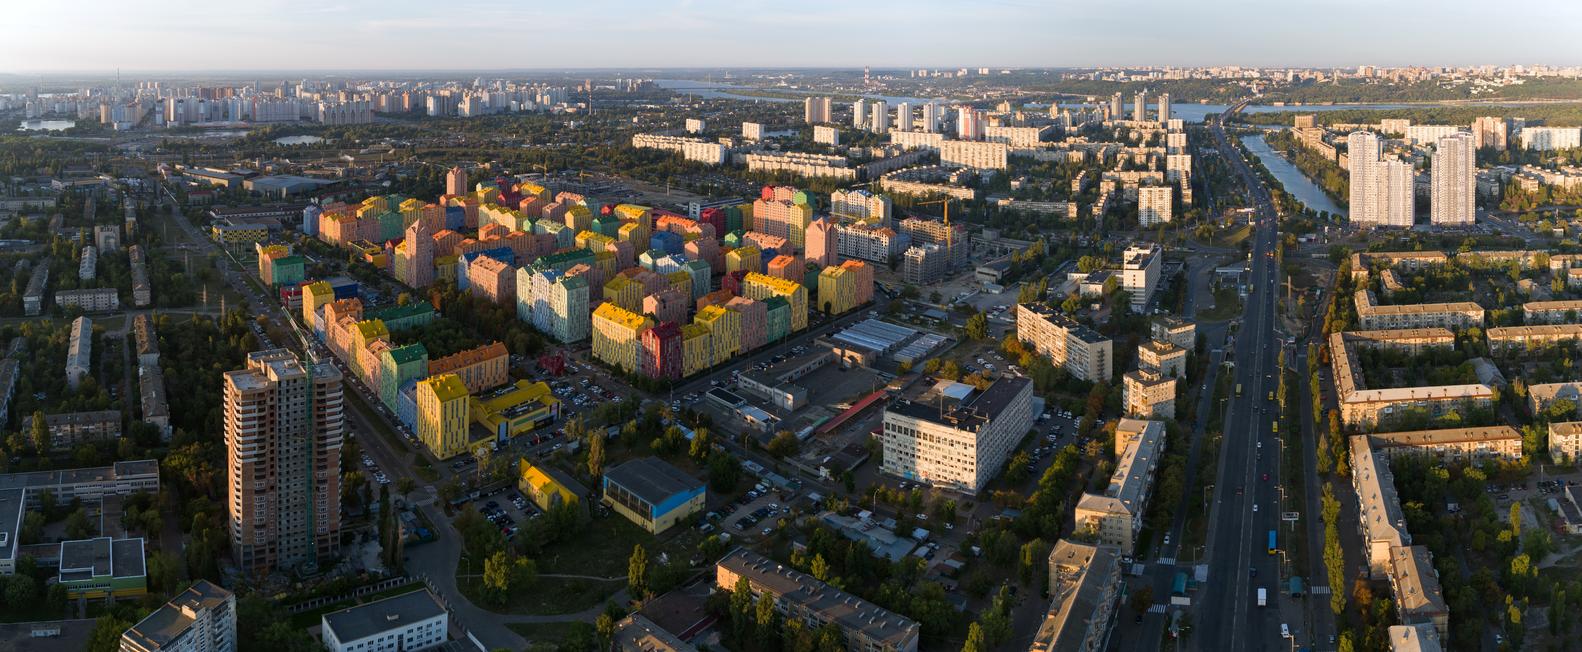 【烏克蘭首個區塊開發住宅區】前工業區大變身 成新一代舒適住宅的標準